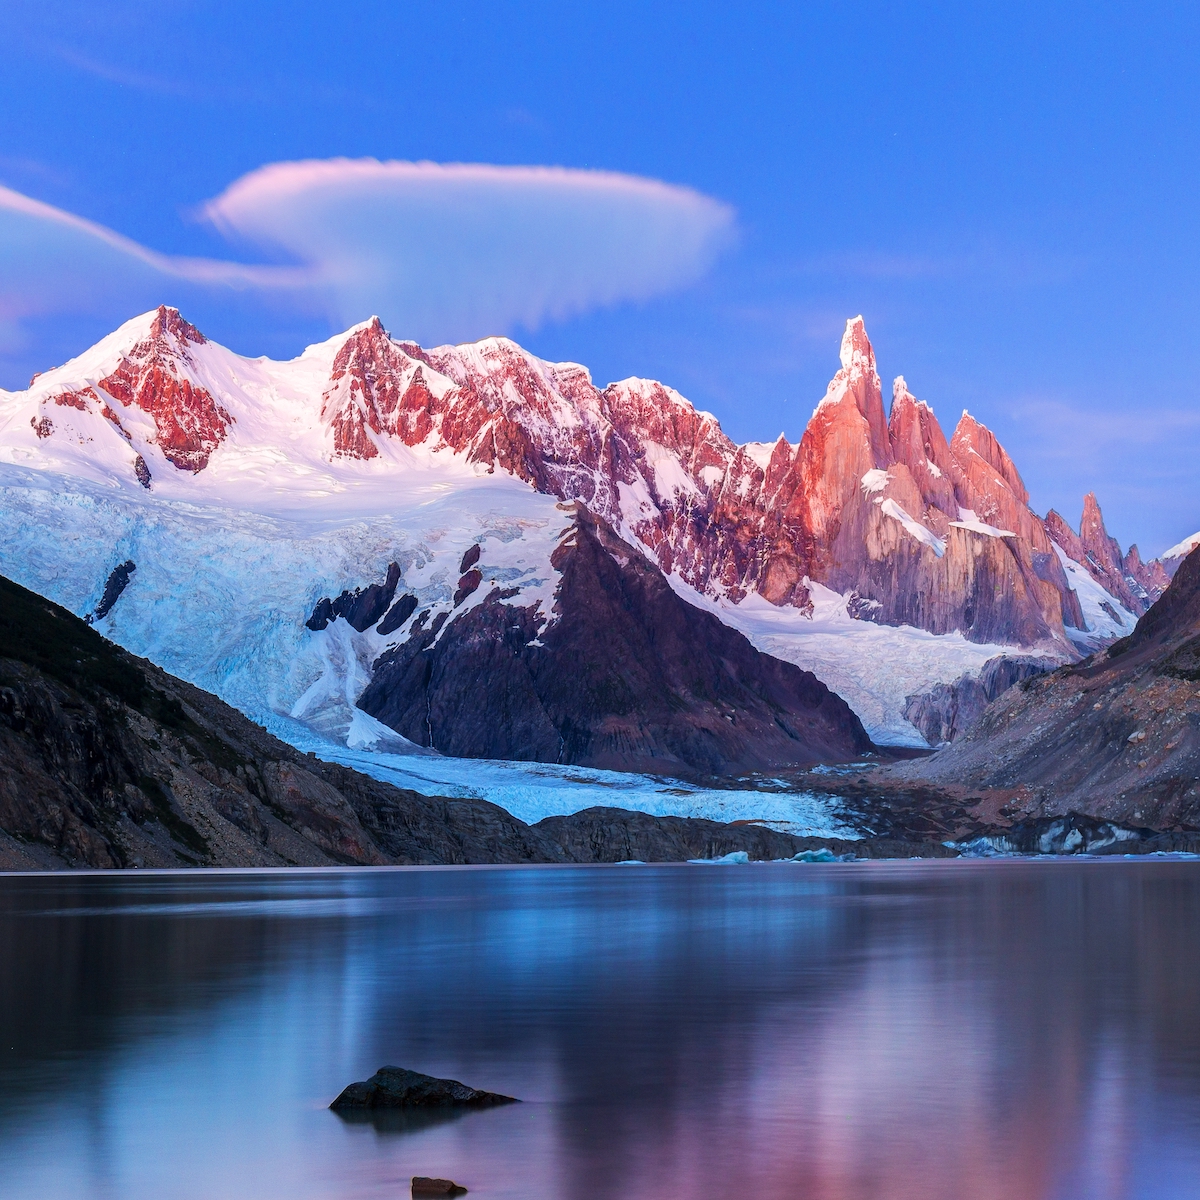 Mount Fitz Roy in Los Glaciares National Park, Argentina